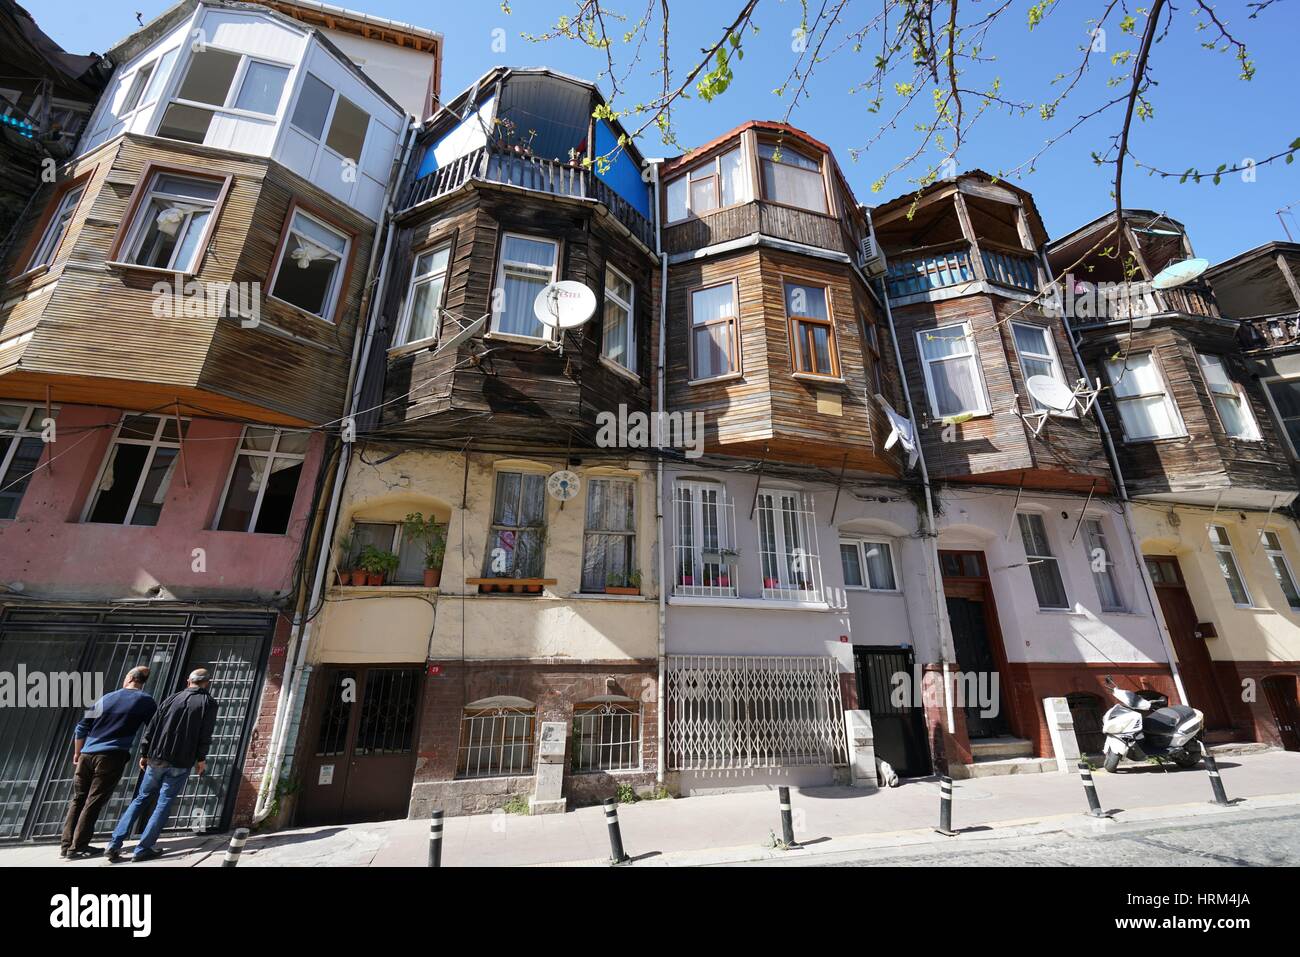 La arquitectura vernácula otomano. Ortakoy calles. Estambul. Turquía Foto de stock